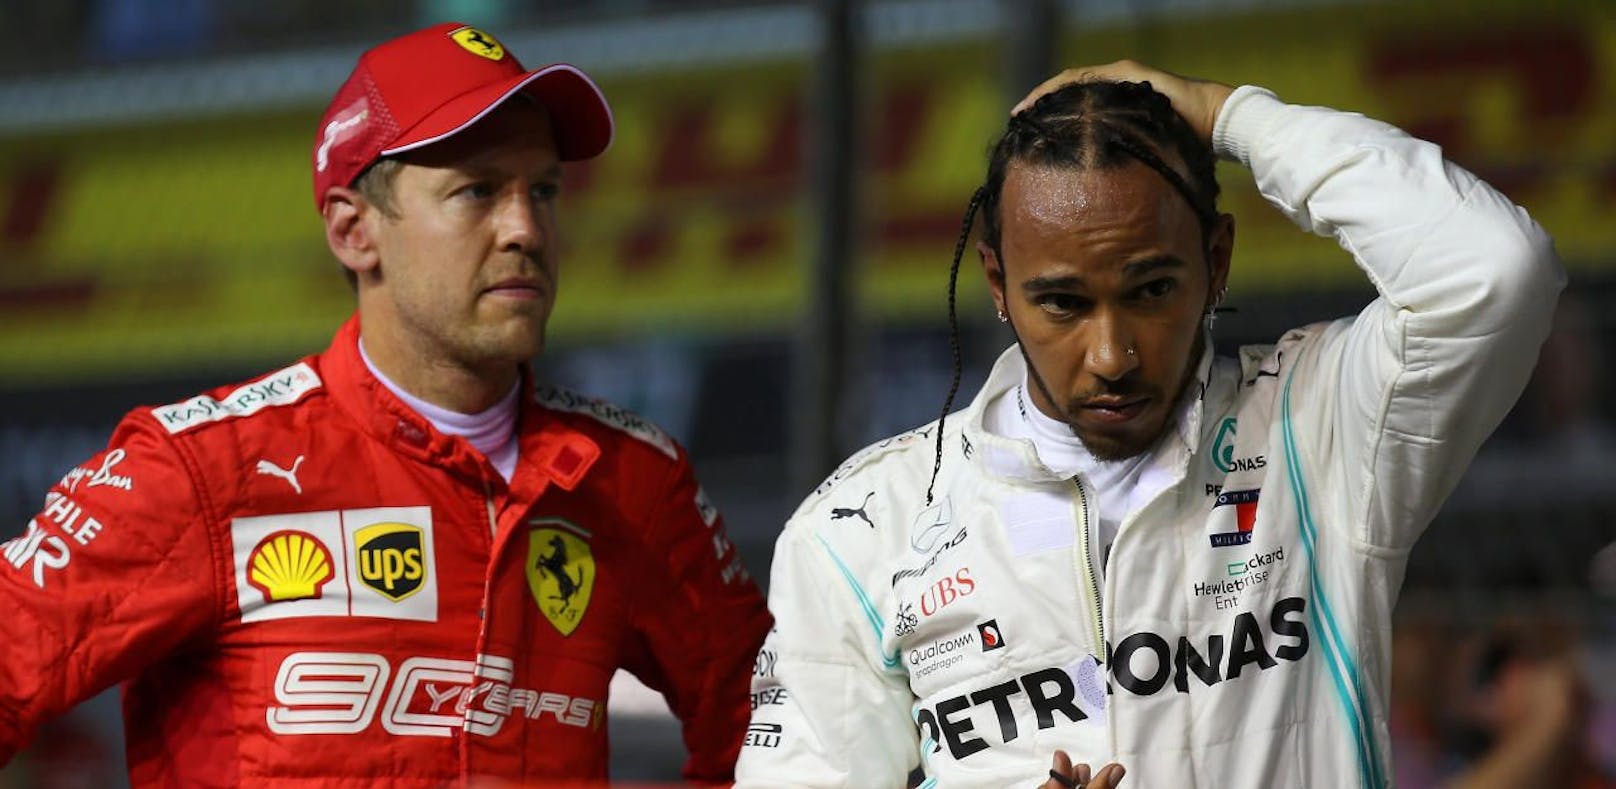 Auf Sebastian Vettel und Lewis Hamilton könnte ein ungemütliches Rennen zukommen.